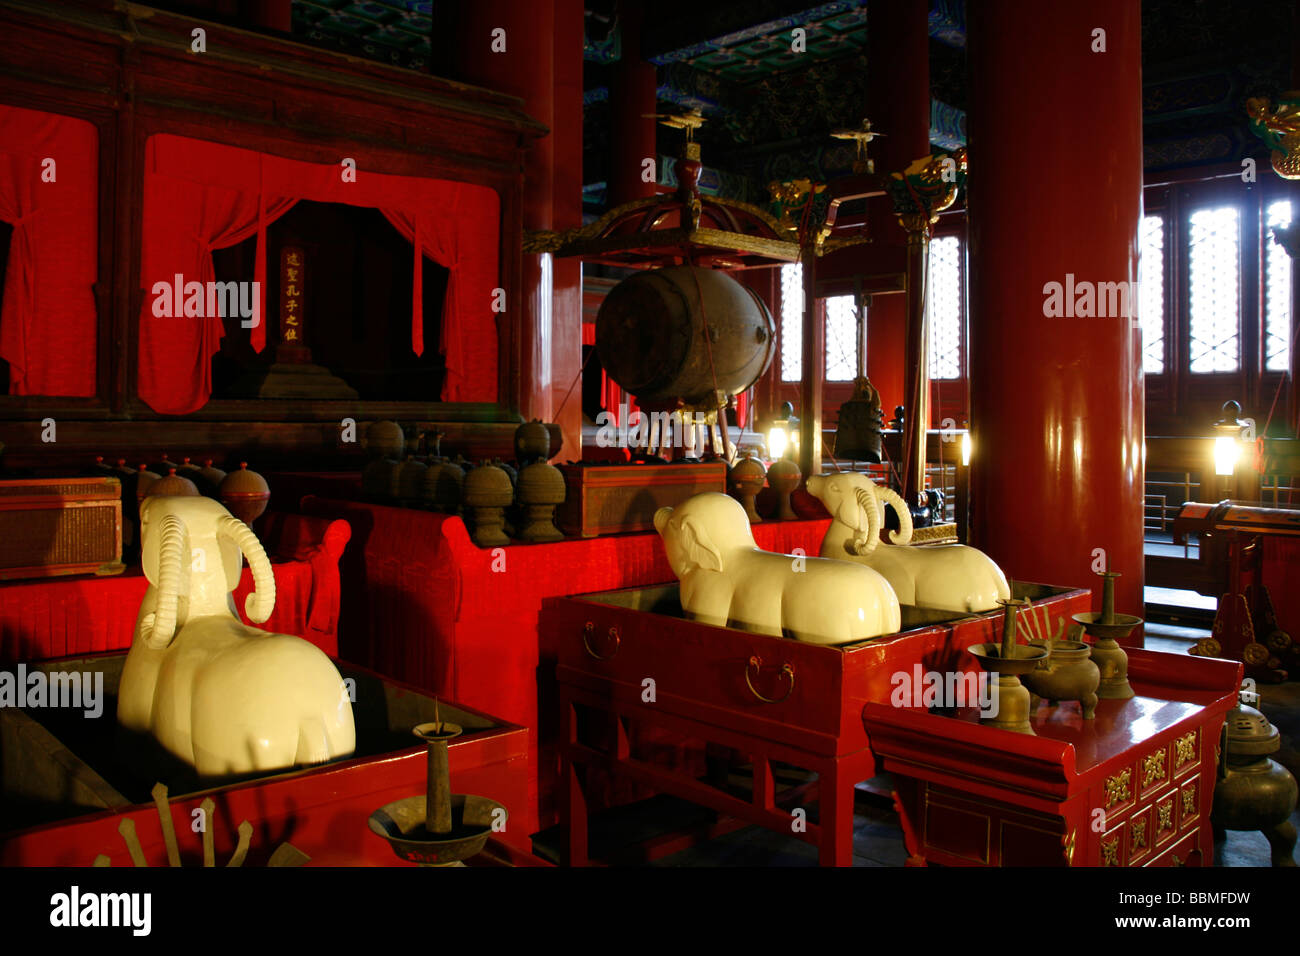 La Chine, Beijing. Le Temple de Yonghe , également connu sous le nom de "Palais de la paix et l'harmonie Lama Temple', 'la Lamaserie Yonghe' Banque D'Images